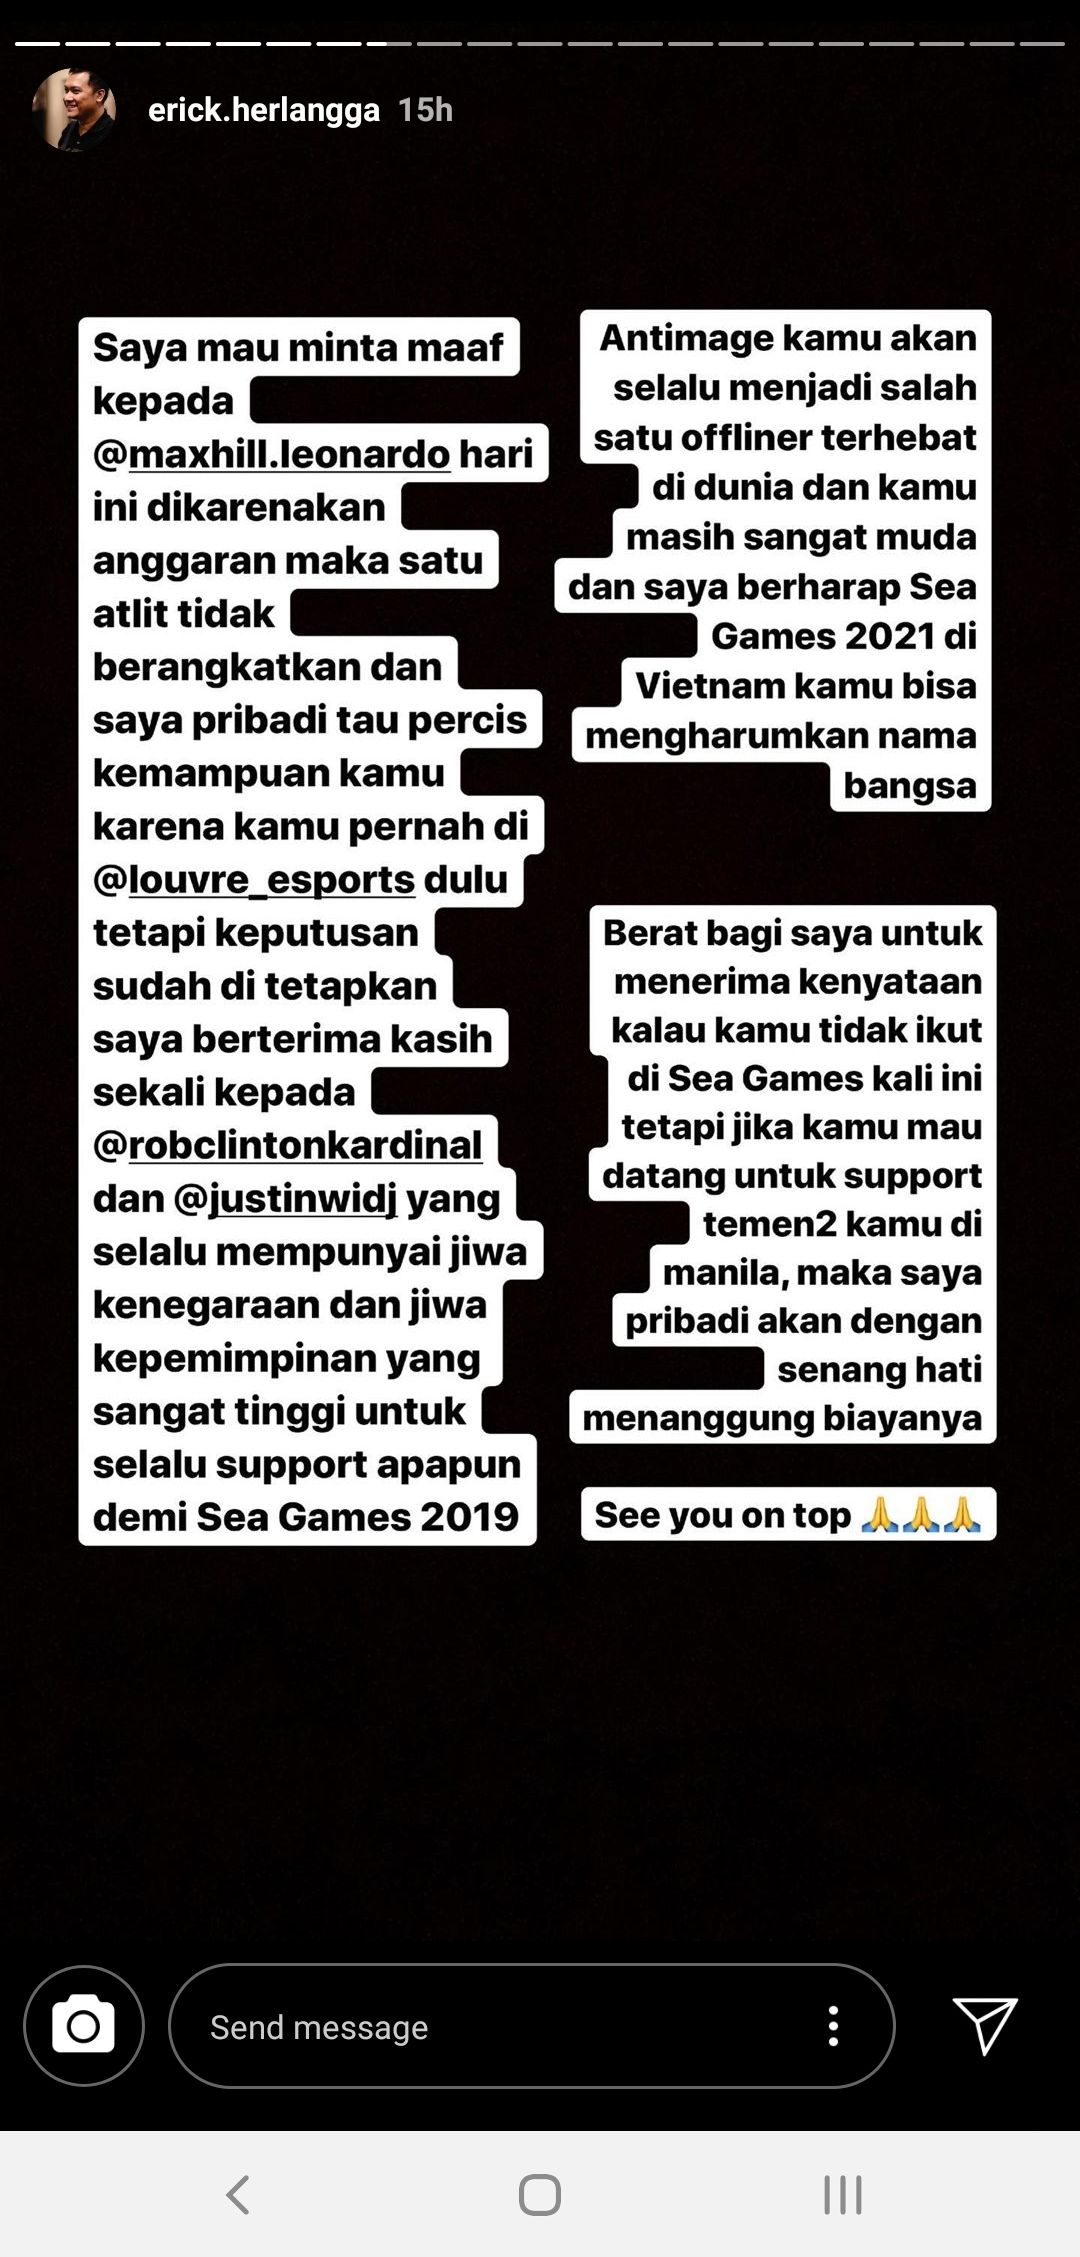 Pernyataan Erick Herlangga di Instagram Stories.